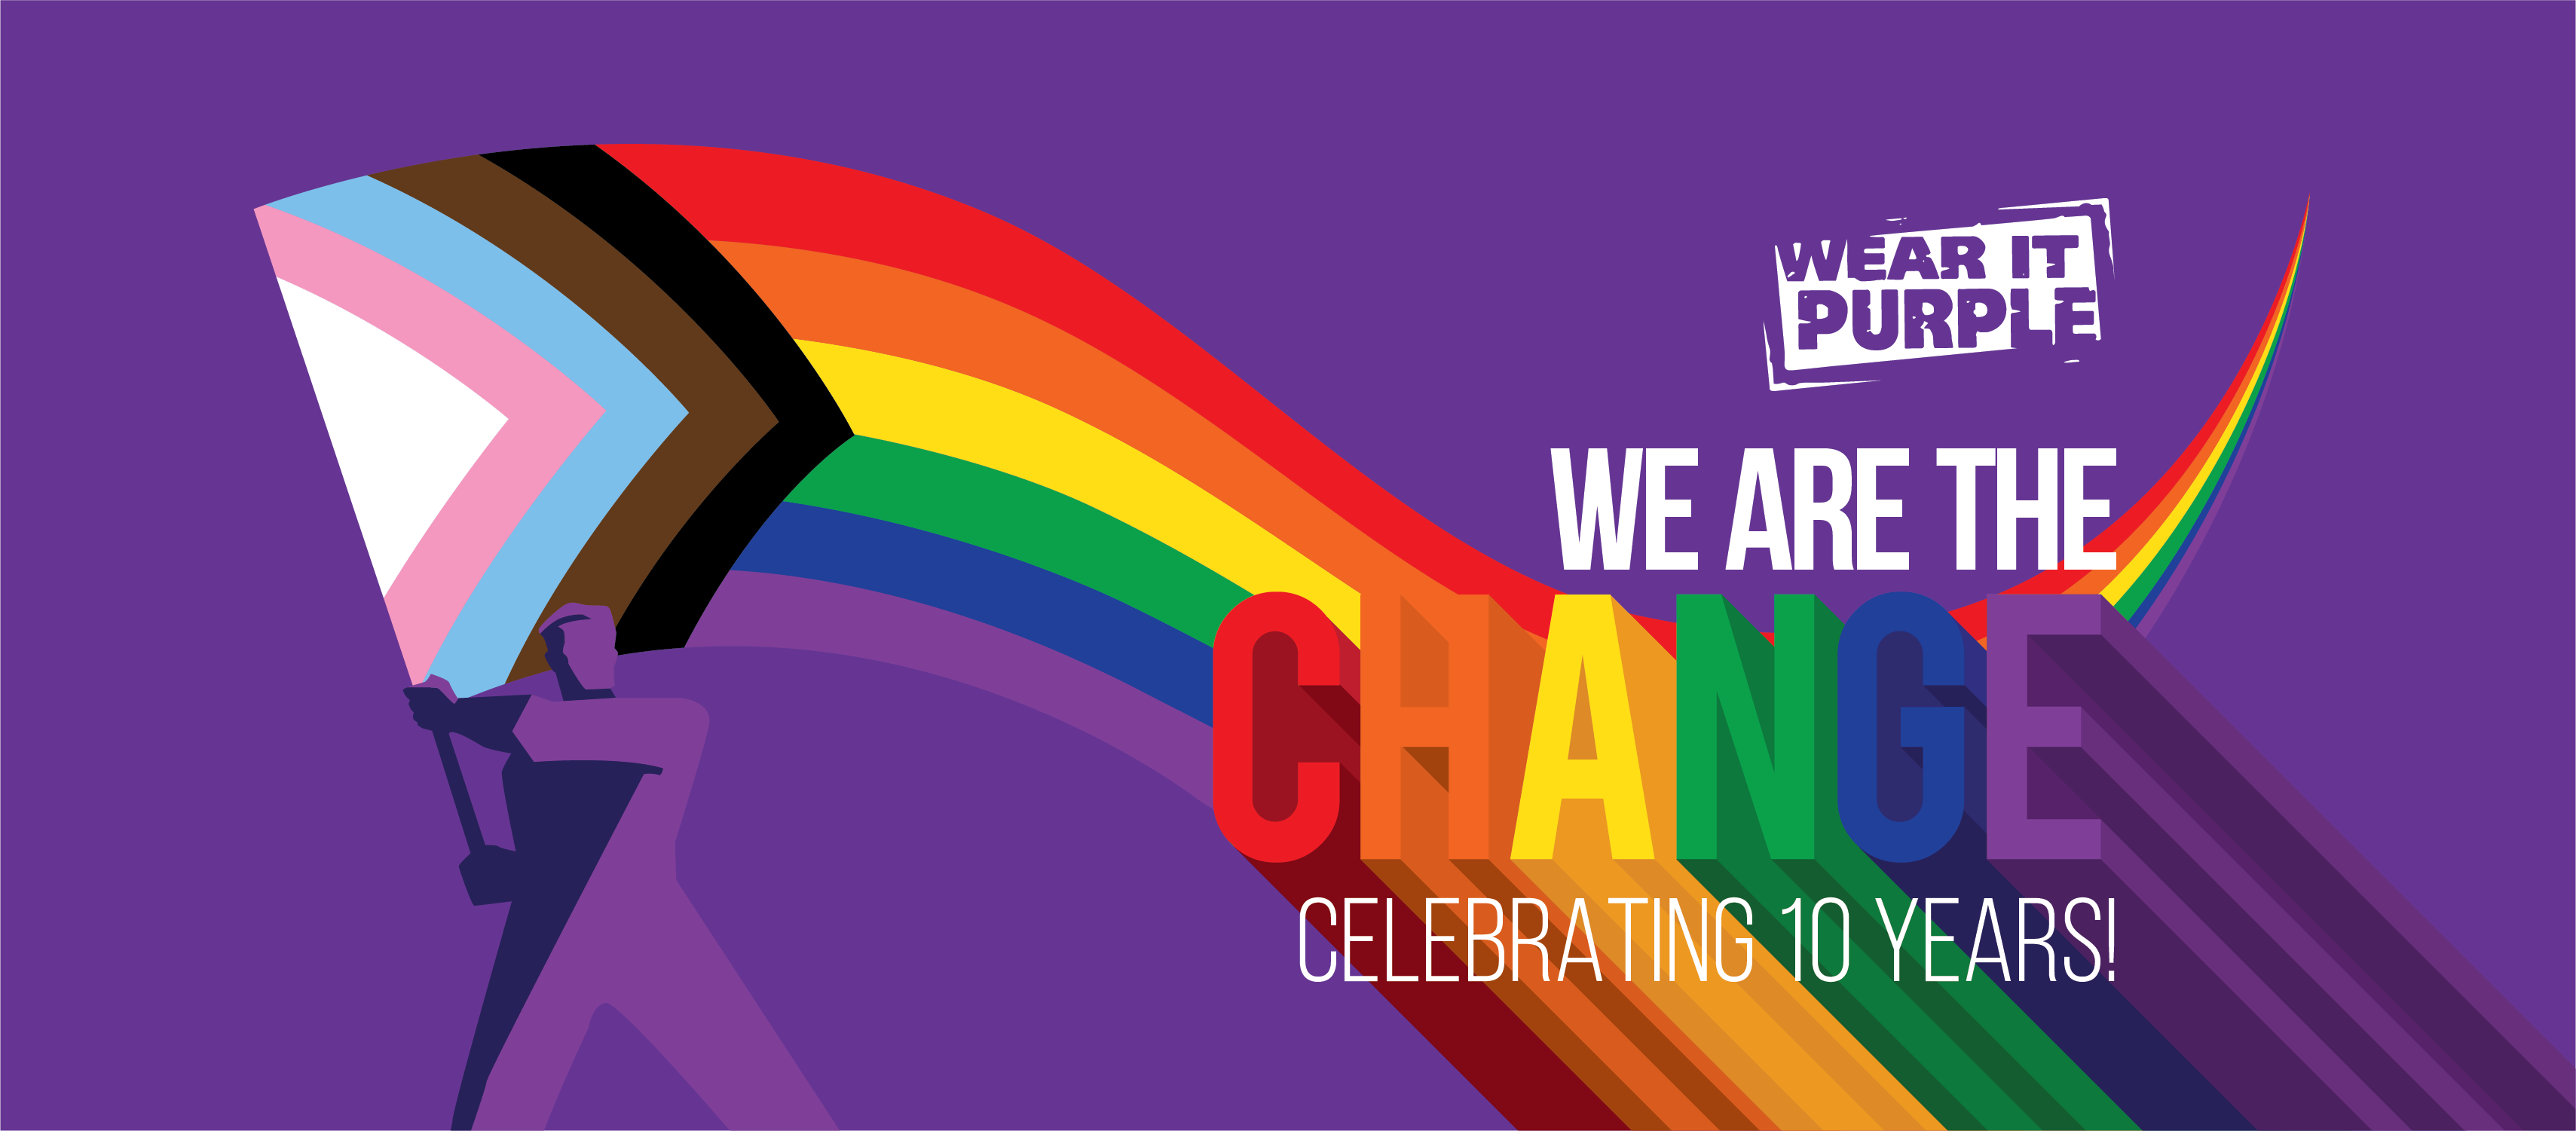 Ngày Wear It Purple 2021 | Đại học Victoria: Đại học Victoria tổ chức lễ kỷ niệm Ngày Wear It Purple năm nay, cùng đón xem những hình ảnh đầy hoạt động và ý nghĩa tại ngôi trường này. Hãy tham gia và cùng đóng góp vào việc xây dựng cộng đồng đa dạng, bình đẳng và yêu thương.